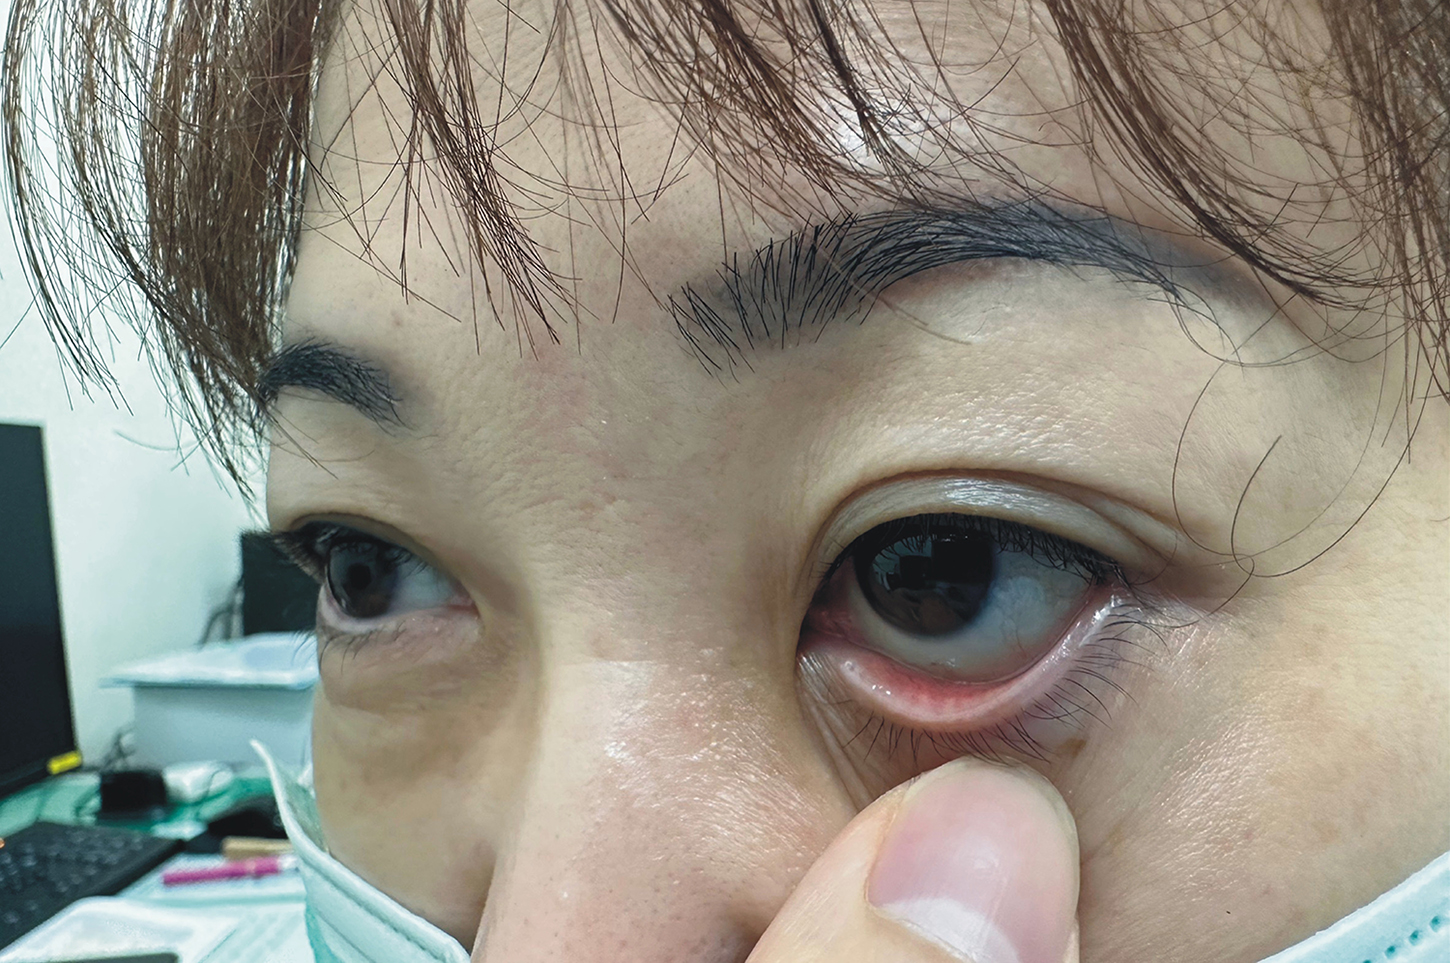 女性患者噴霧器噴灑消毒劑時，不慎將藥水噴濺到自己眼睛，立刻感到劇痛難忍。(圖/彰基提供)